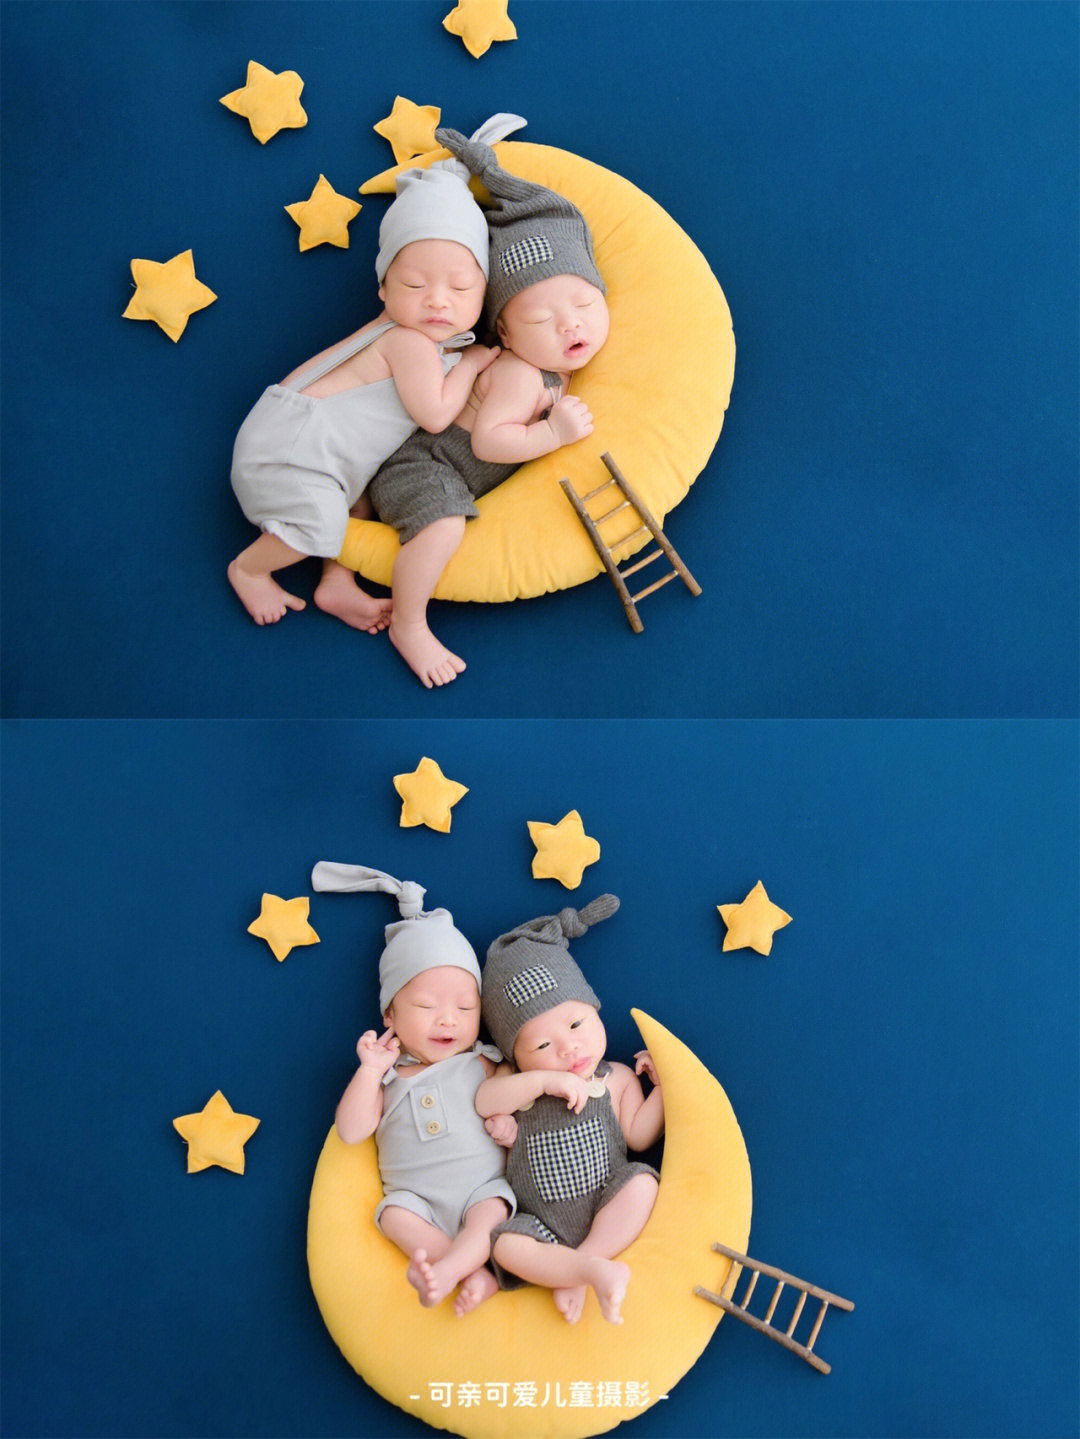 双胞胎满月照创意照片图片